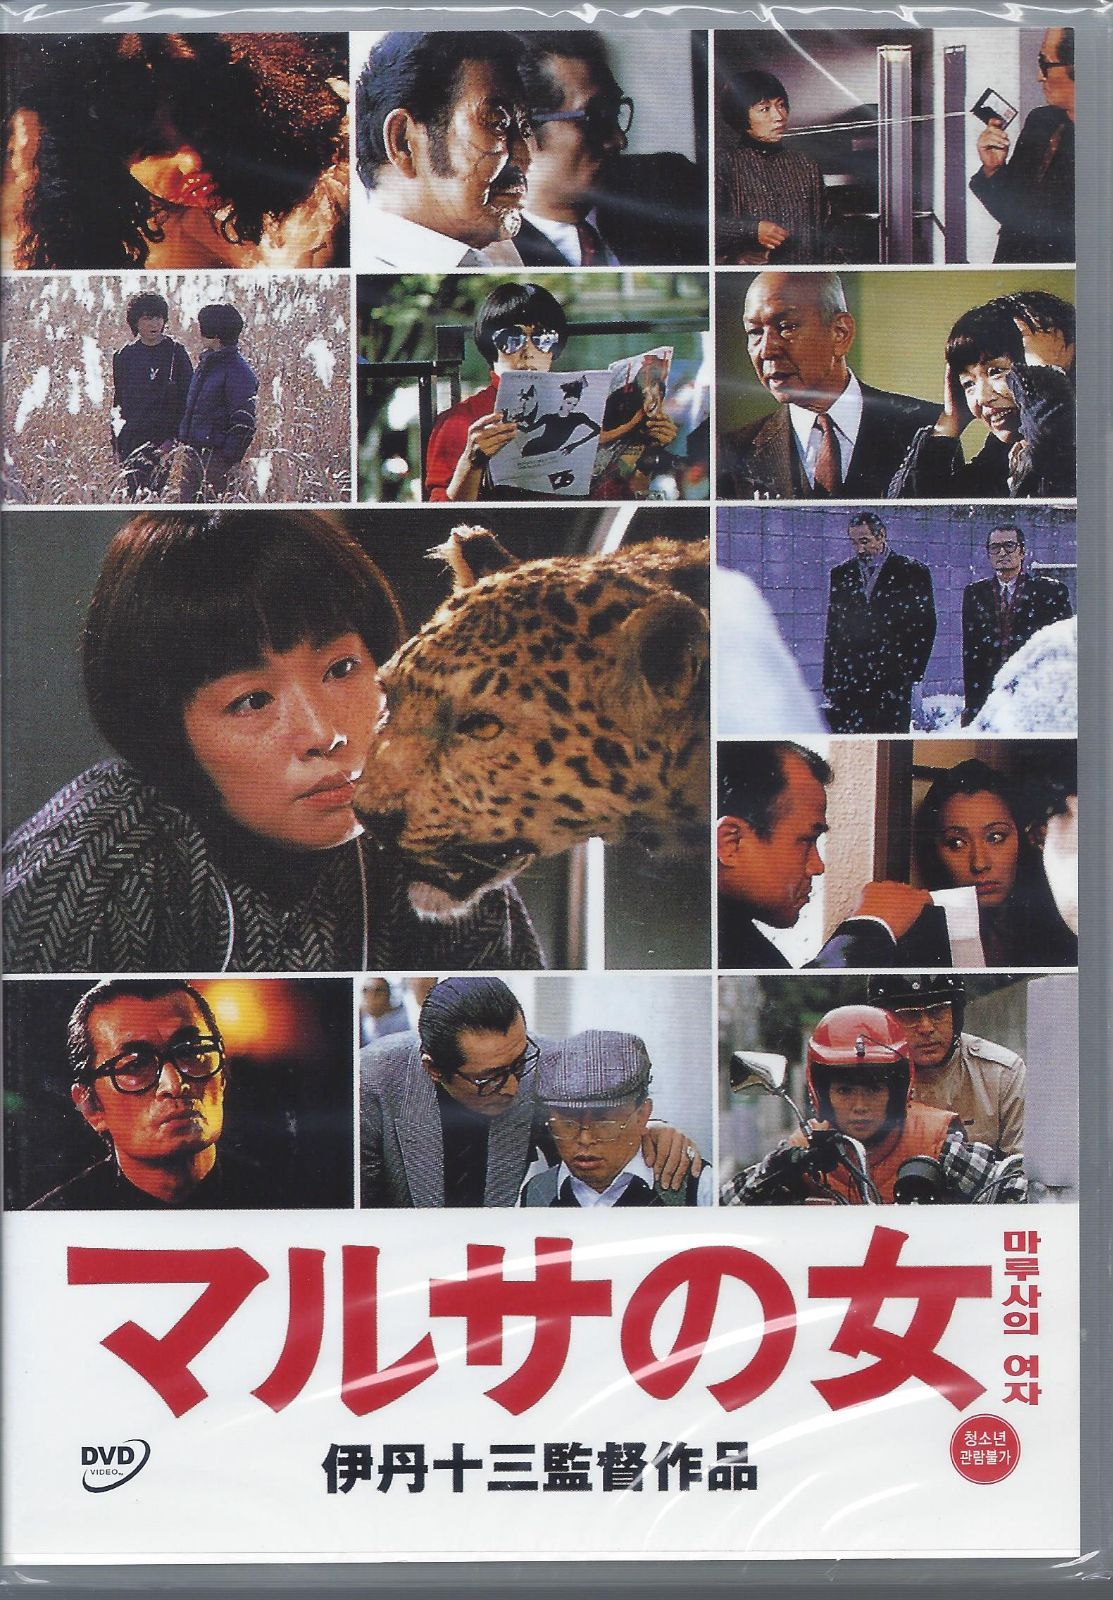 伊丹十三【マルサの女をマルサする】DVD - 日本映画